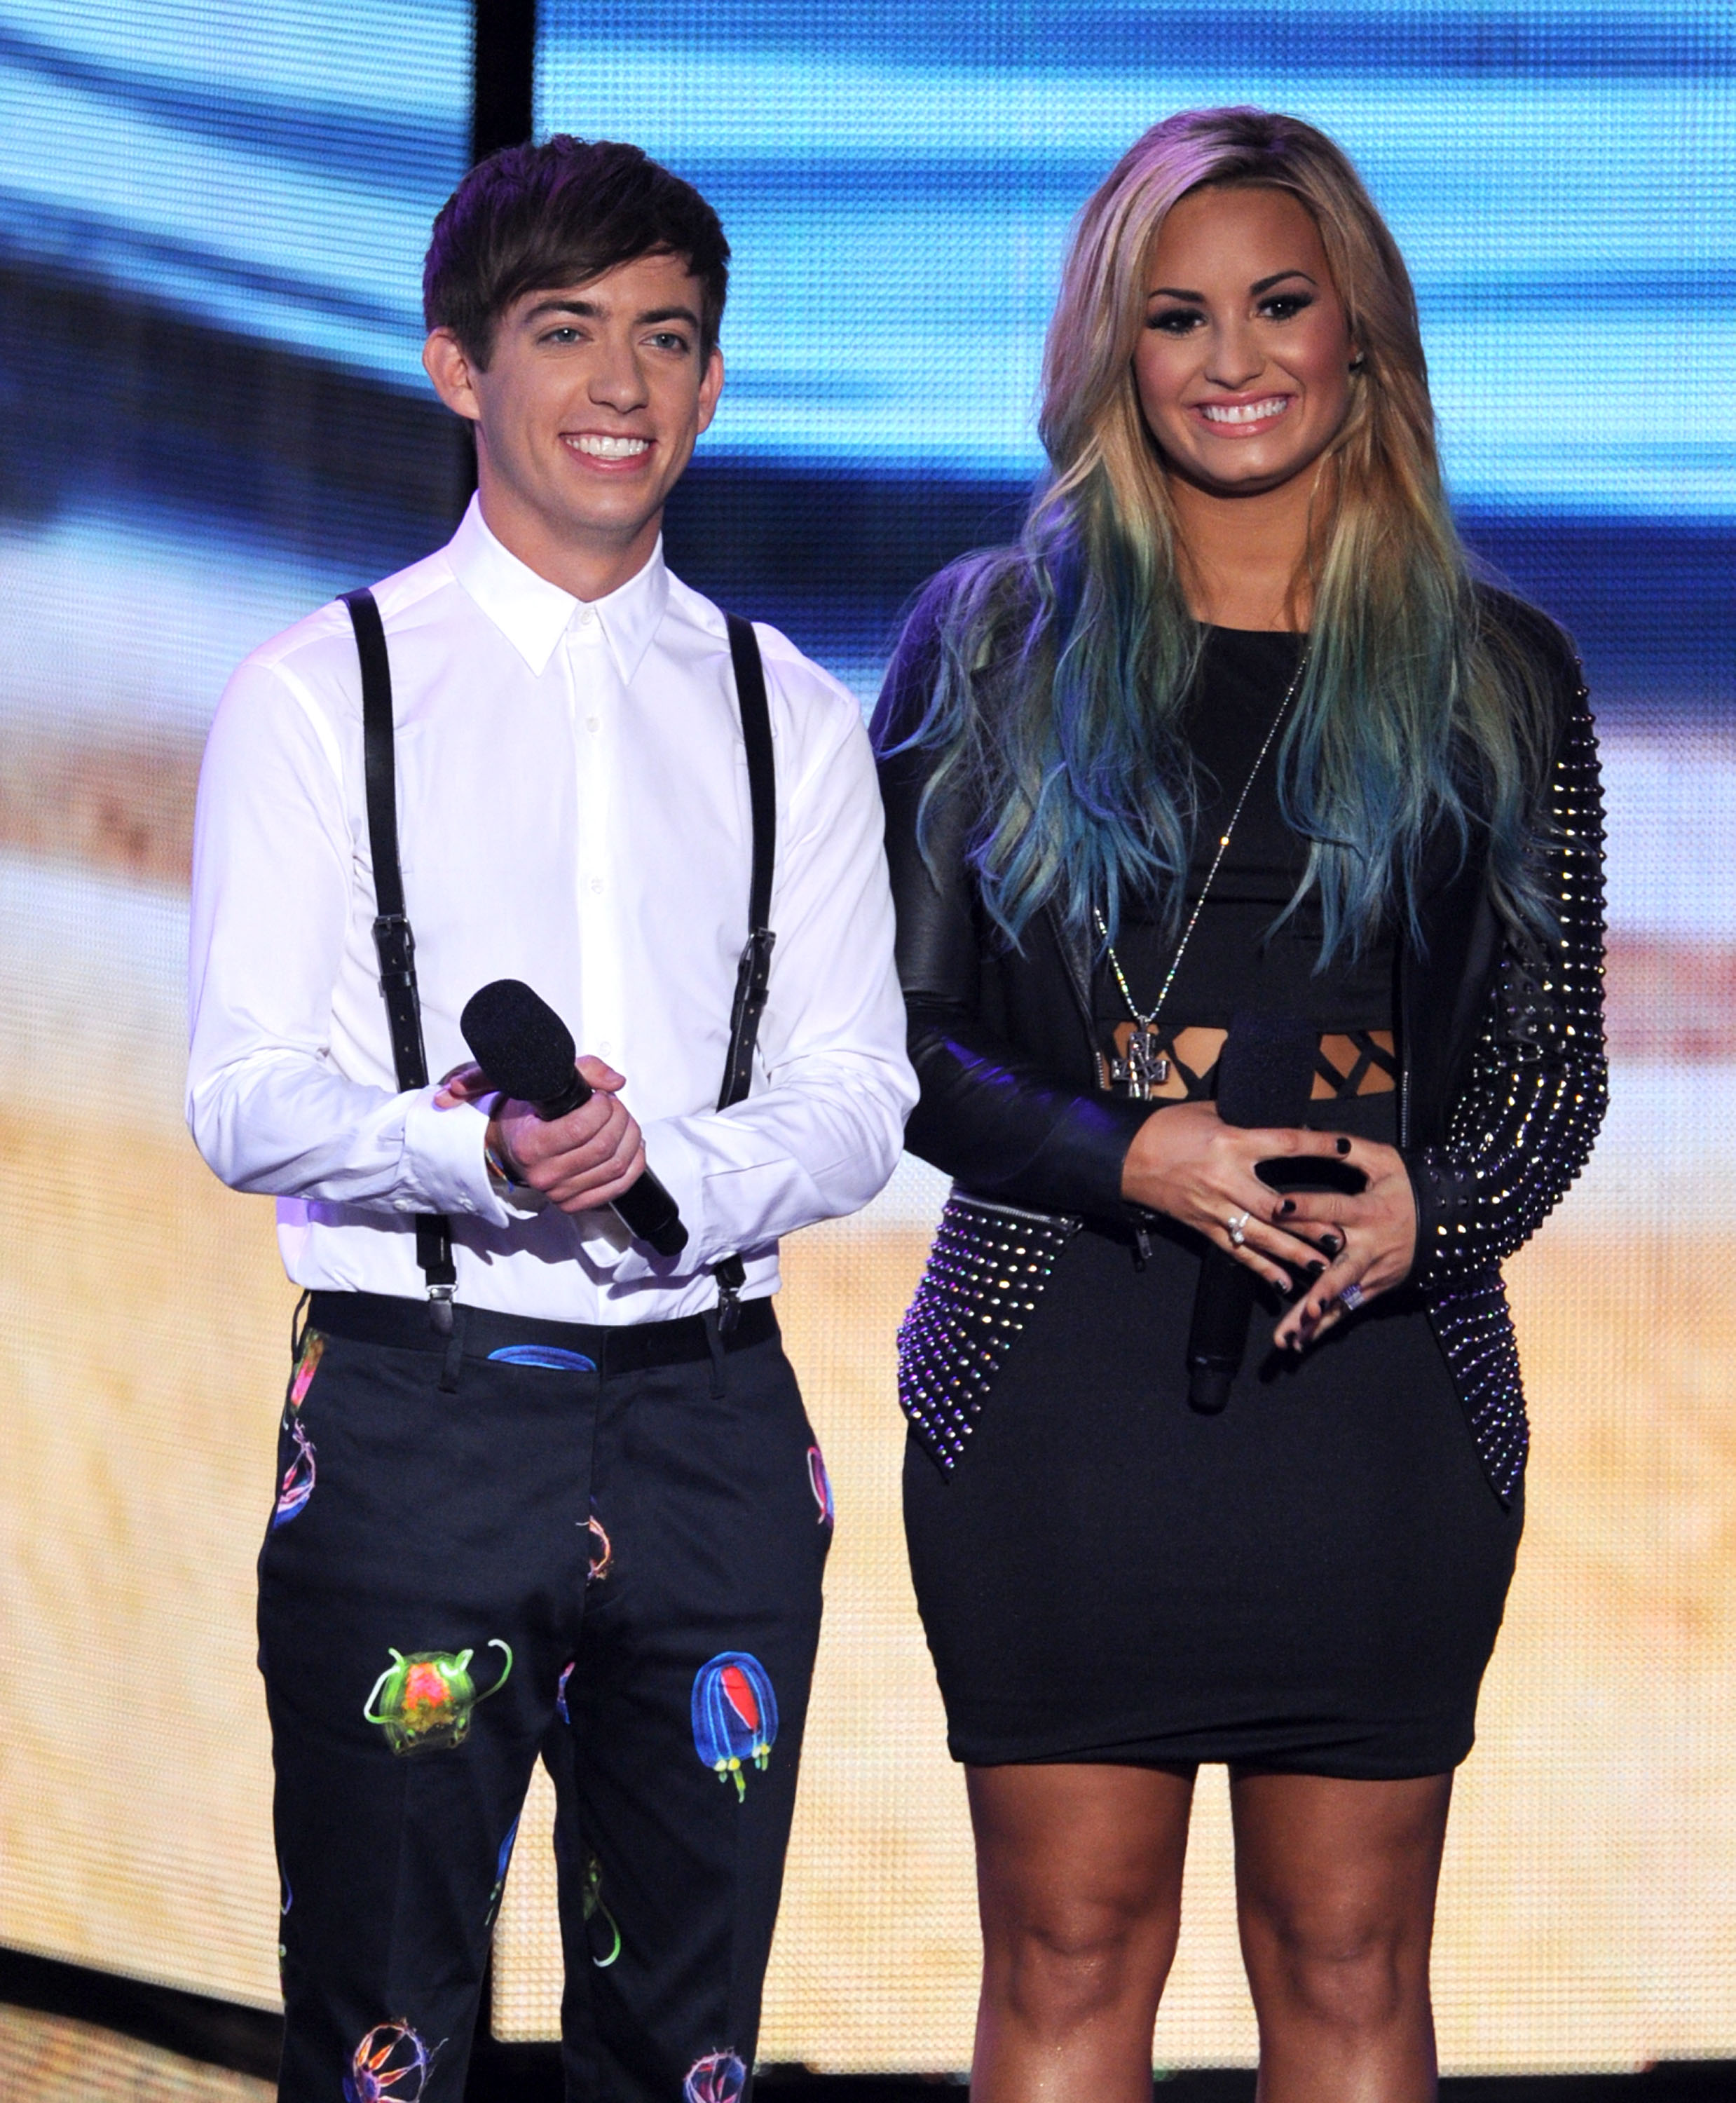 Teen Choice Awards 2012 - Show